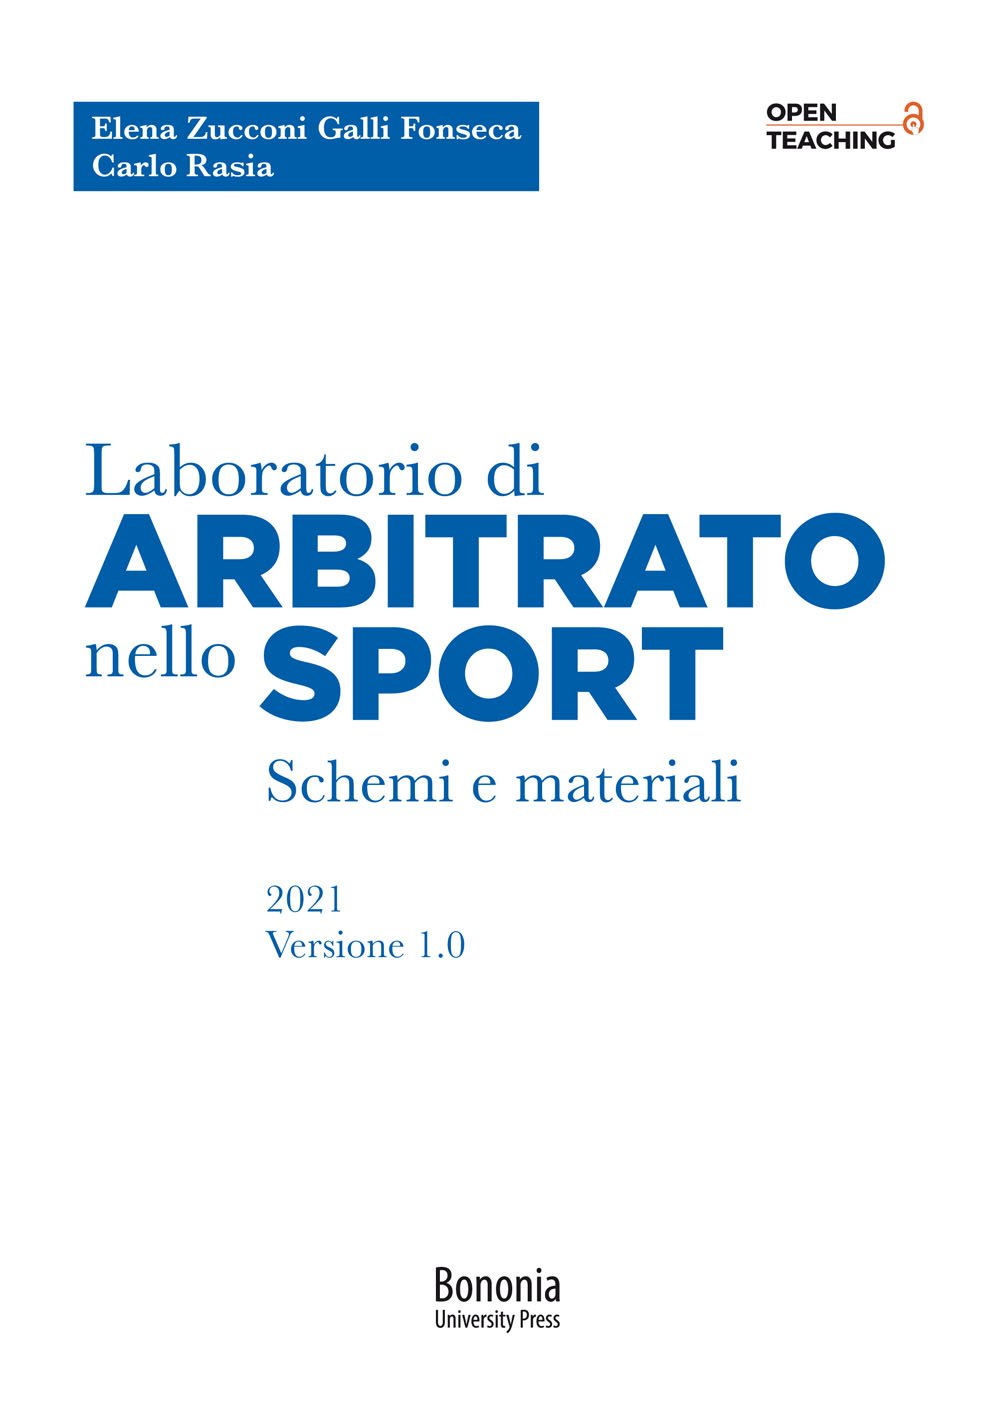 Laboratorio di arbitrato nello sport - Bologna University Press